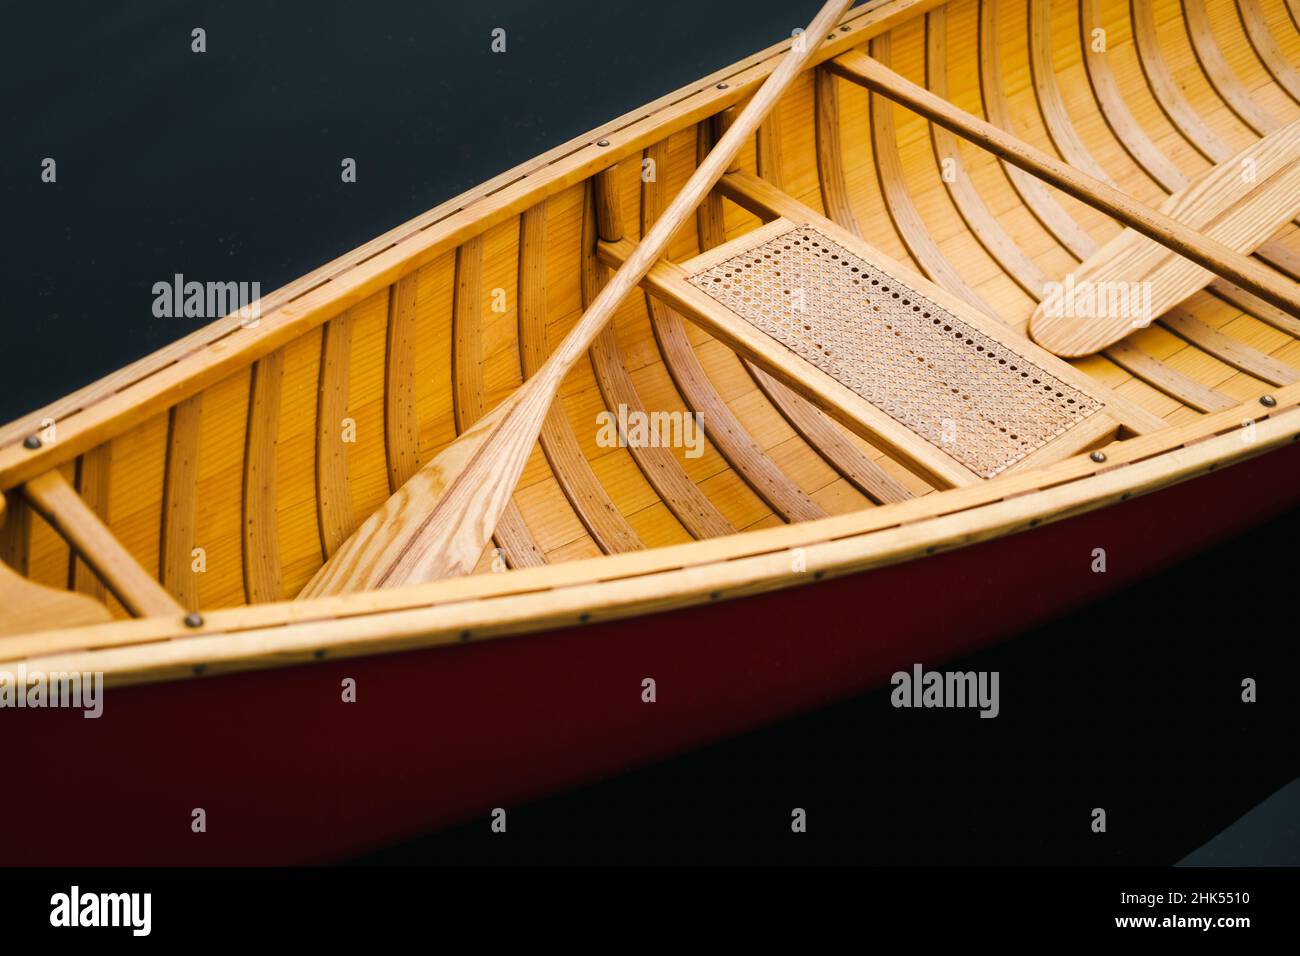 Dettagli di una bella barca in canoa di legno sull'acqua. Pagaie e posto a sedere di una barca galleggiante su acqua scura, nessuna gente Foto Stock